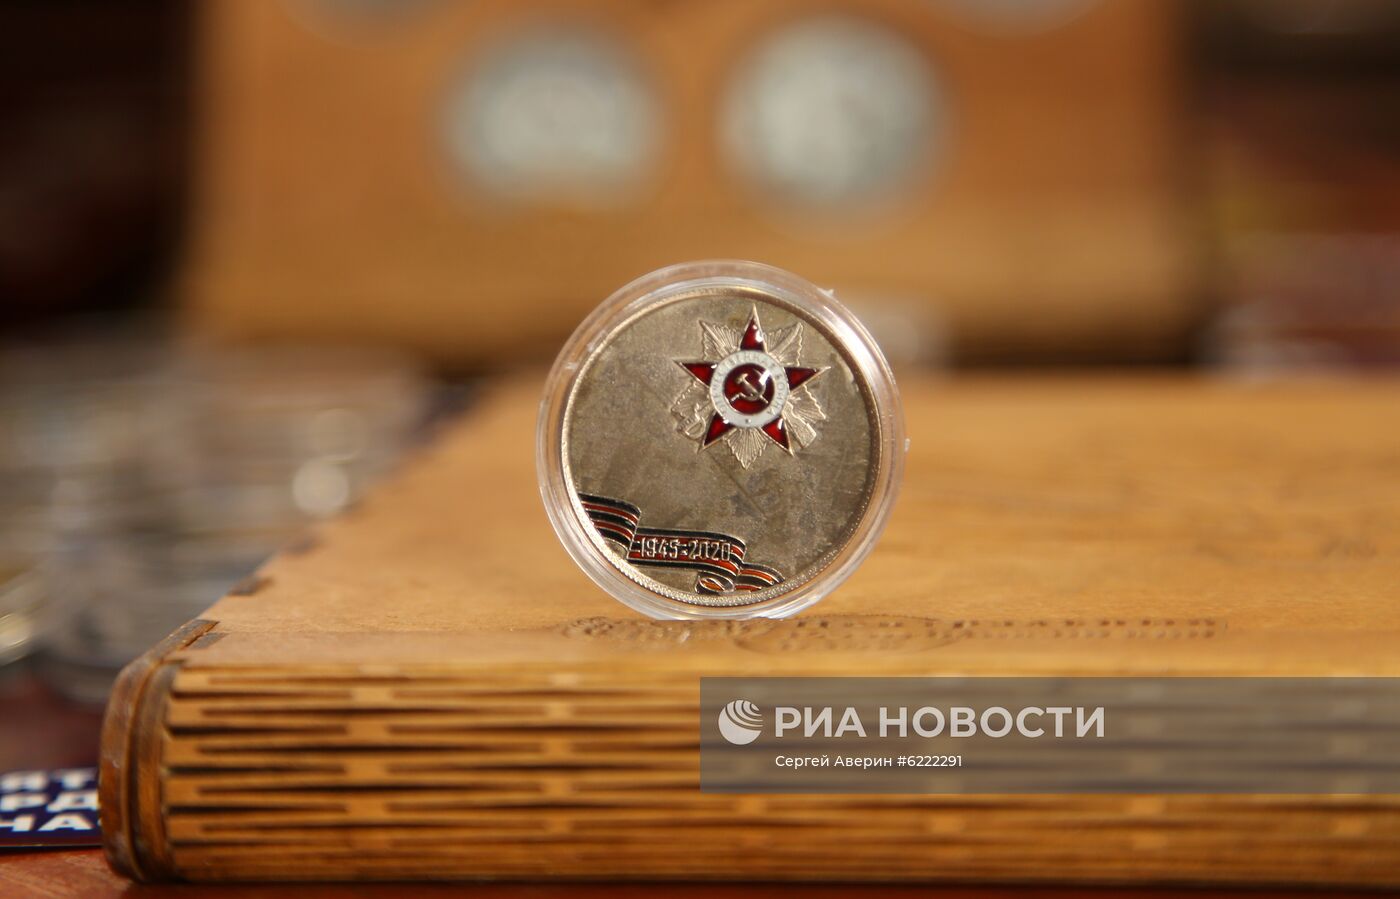 Памятные знаки к 75-летию Победы в ВОВ начали выпускать в Донецке